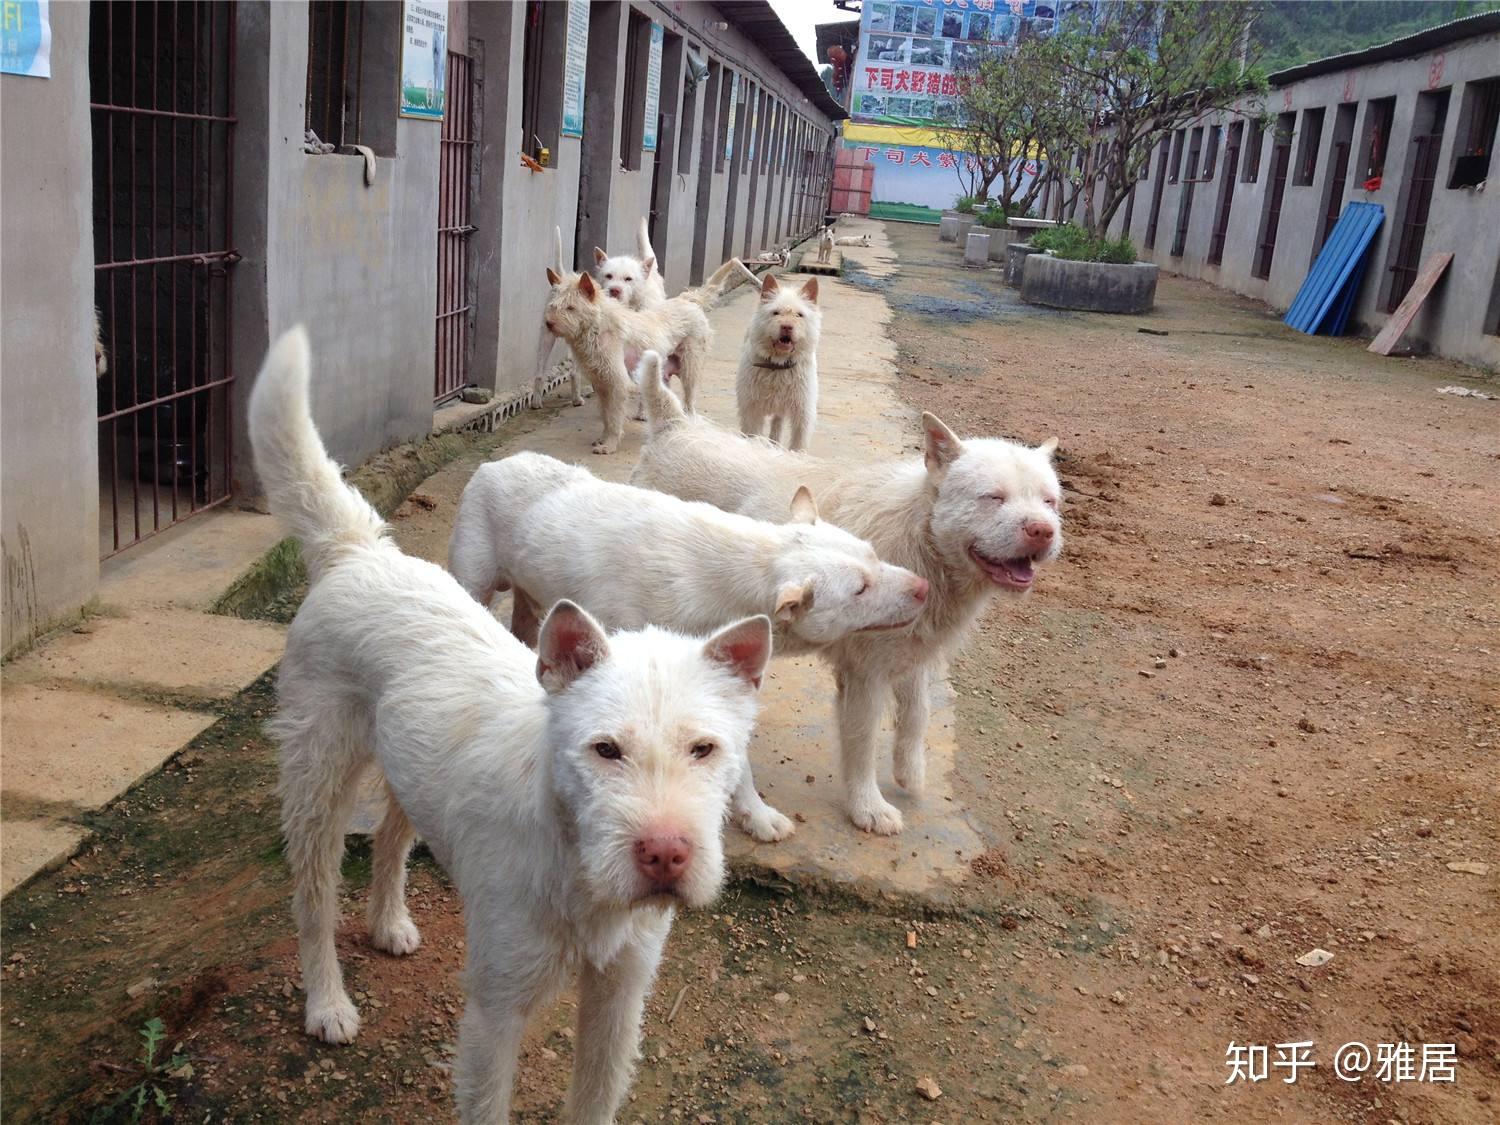 出售纯种贵州下司犬出售 - 桂林宠物交易信息 - 桂林二手市场